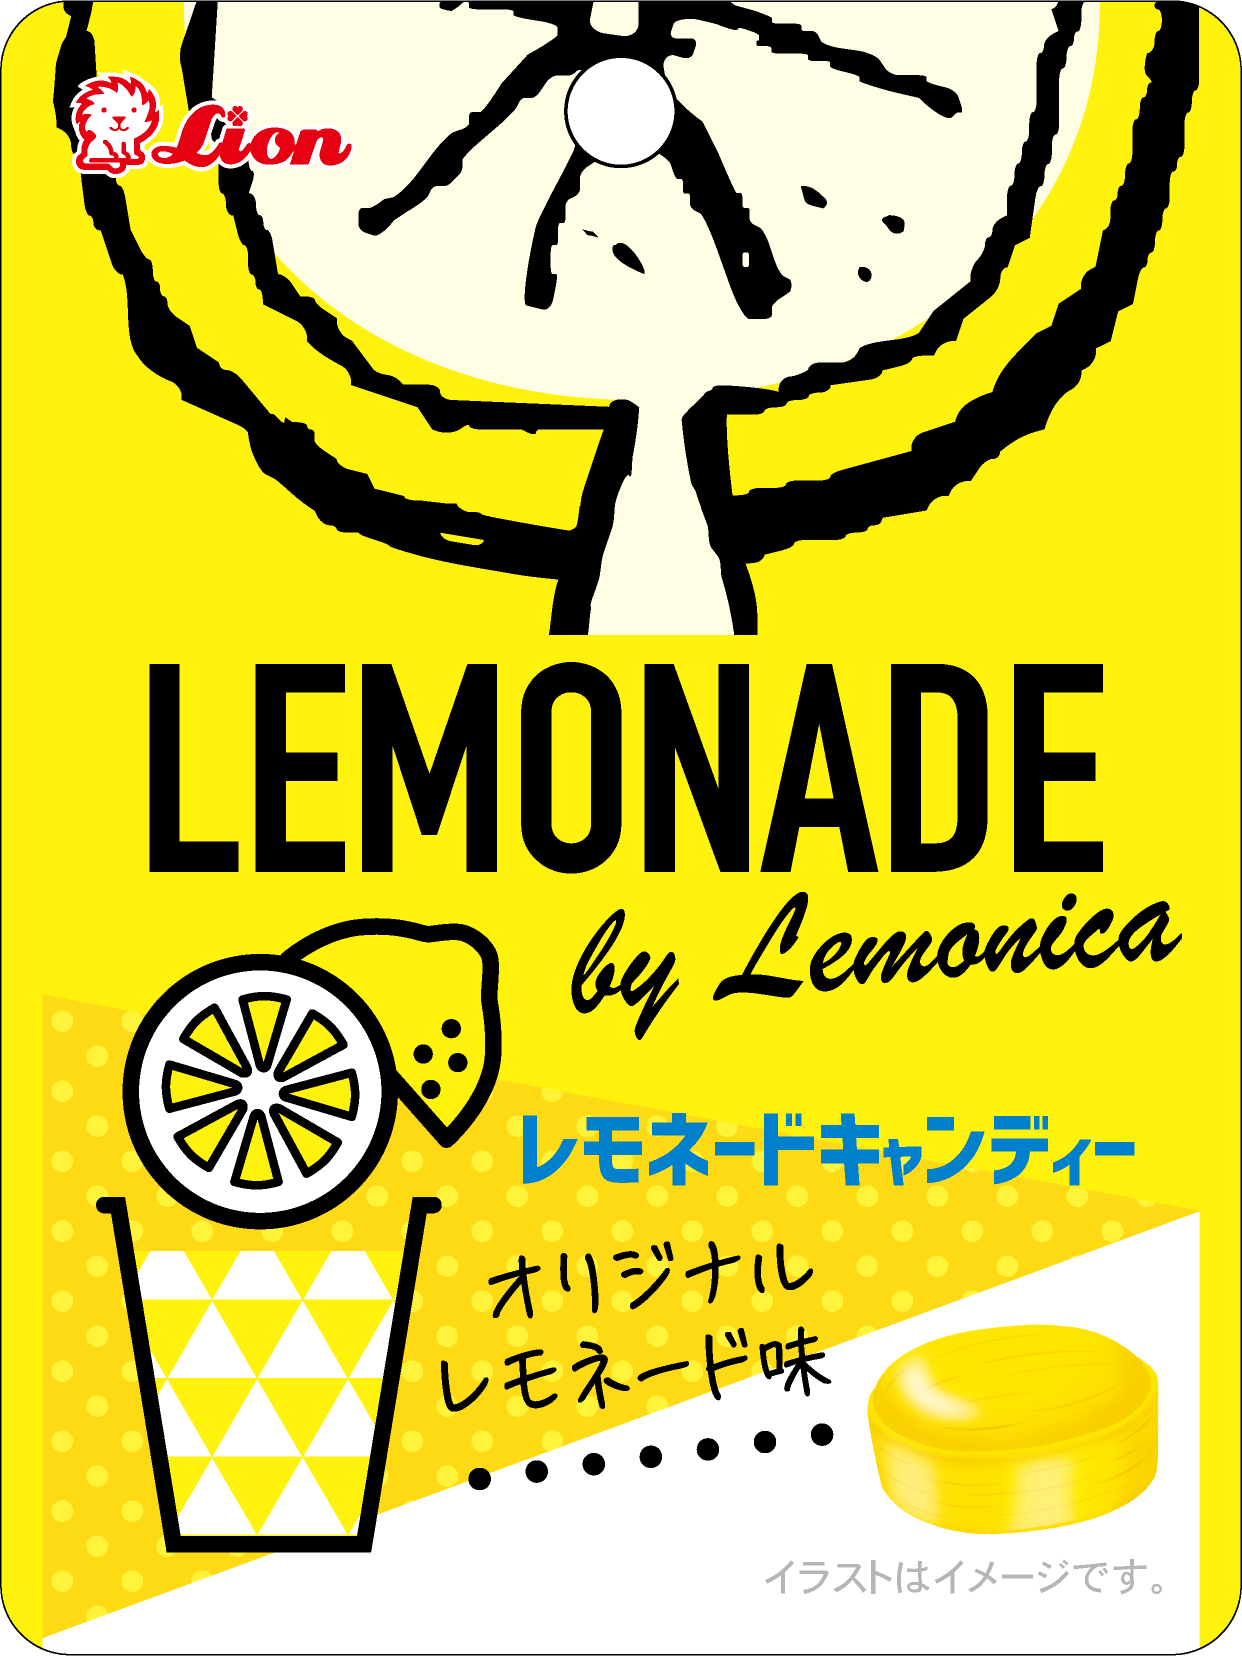 レモニカのレモネードがキャンディーに😳？🧡オリジナルレモネードを原料に使用した「レモネードキャンディー」がLEMONADE by Lemonica 全店の店頭にて先行発売中✨